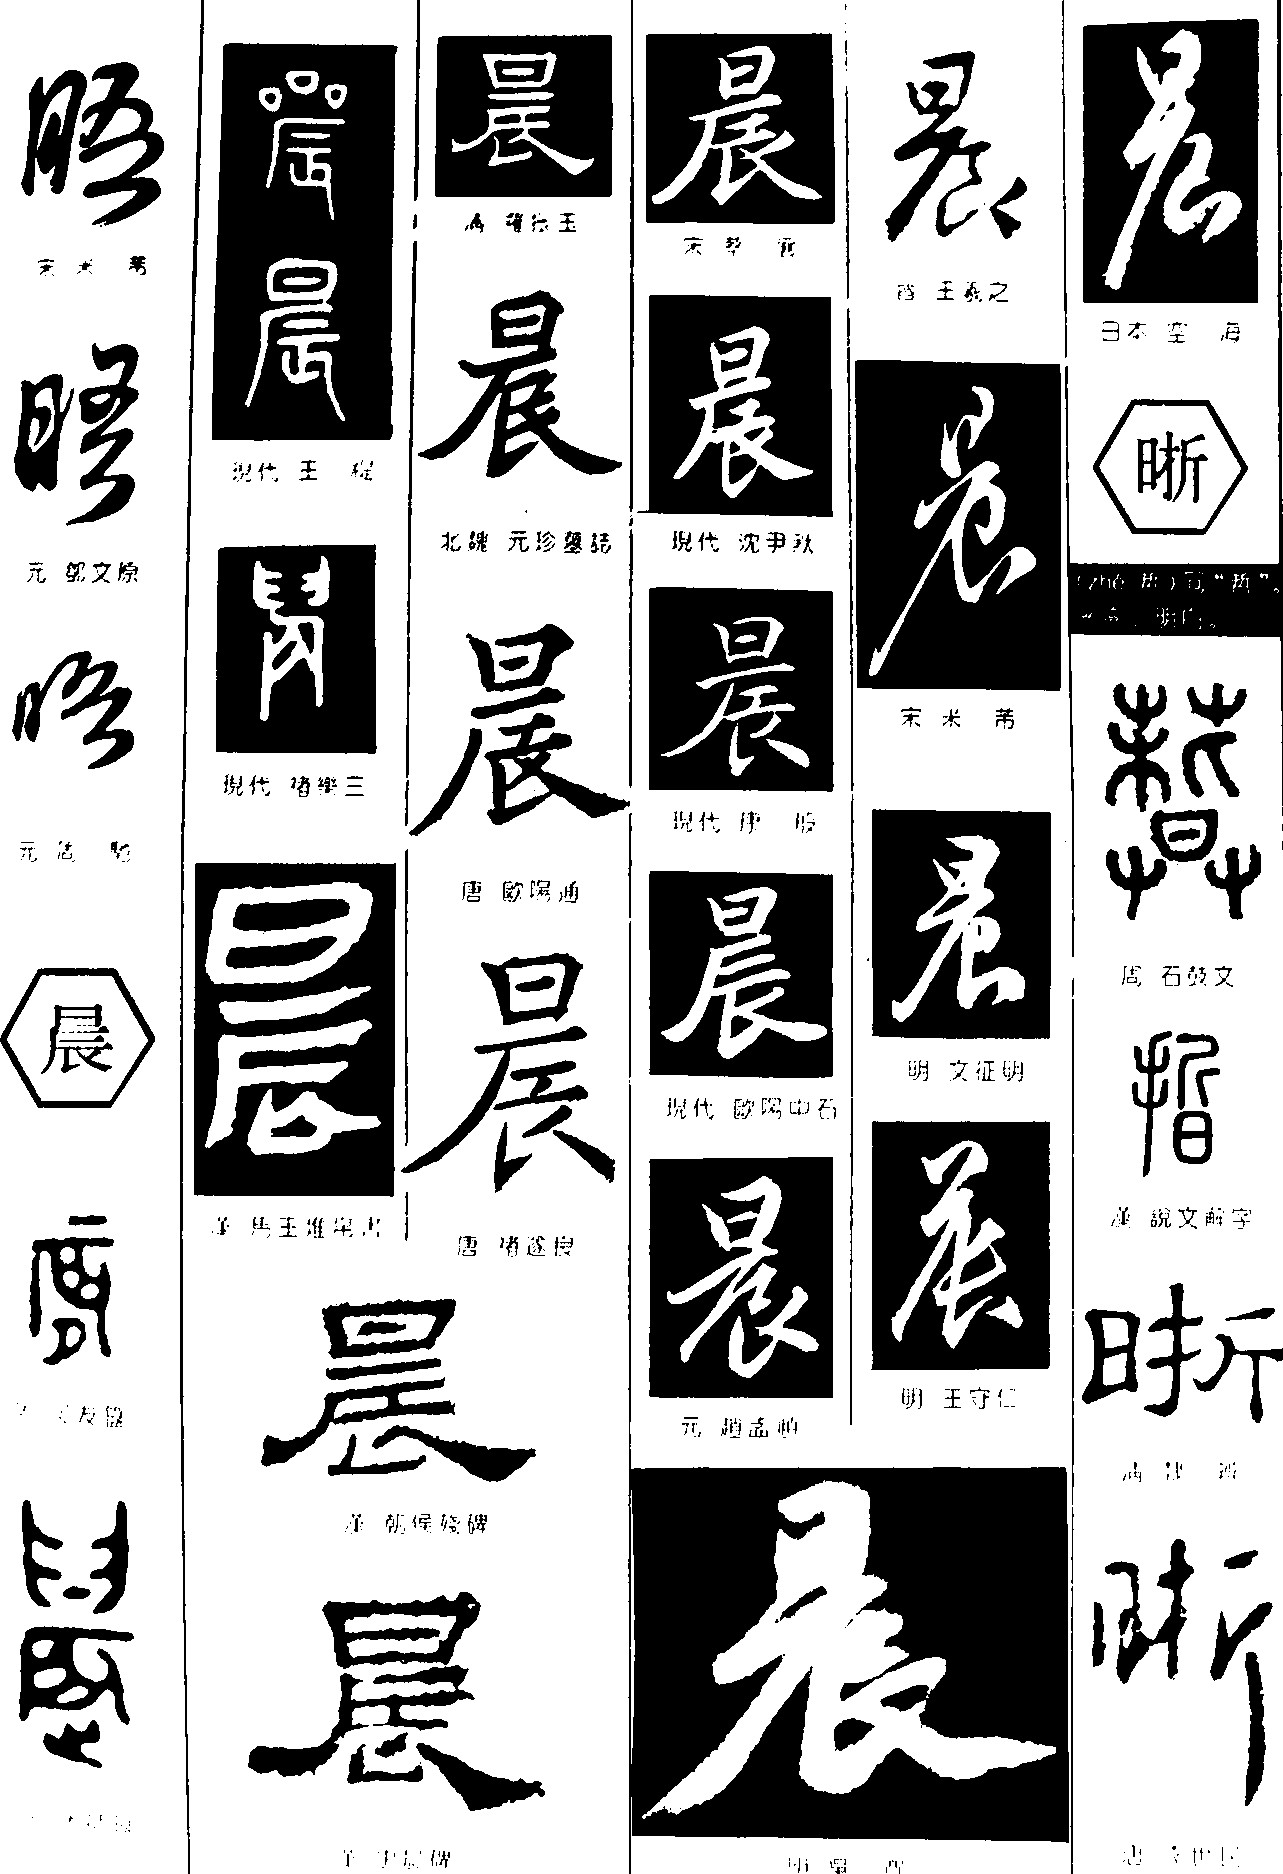 晤晨晰 - 艺术字体_艺术字体设计_字体下载_中国书法